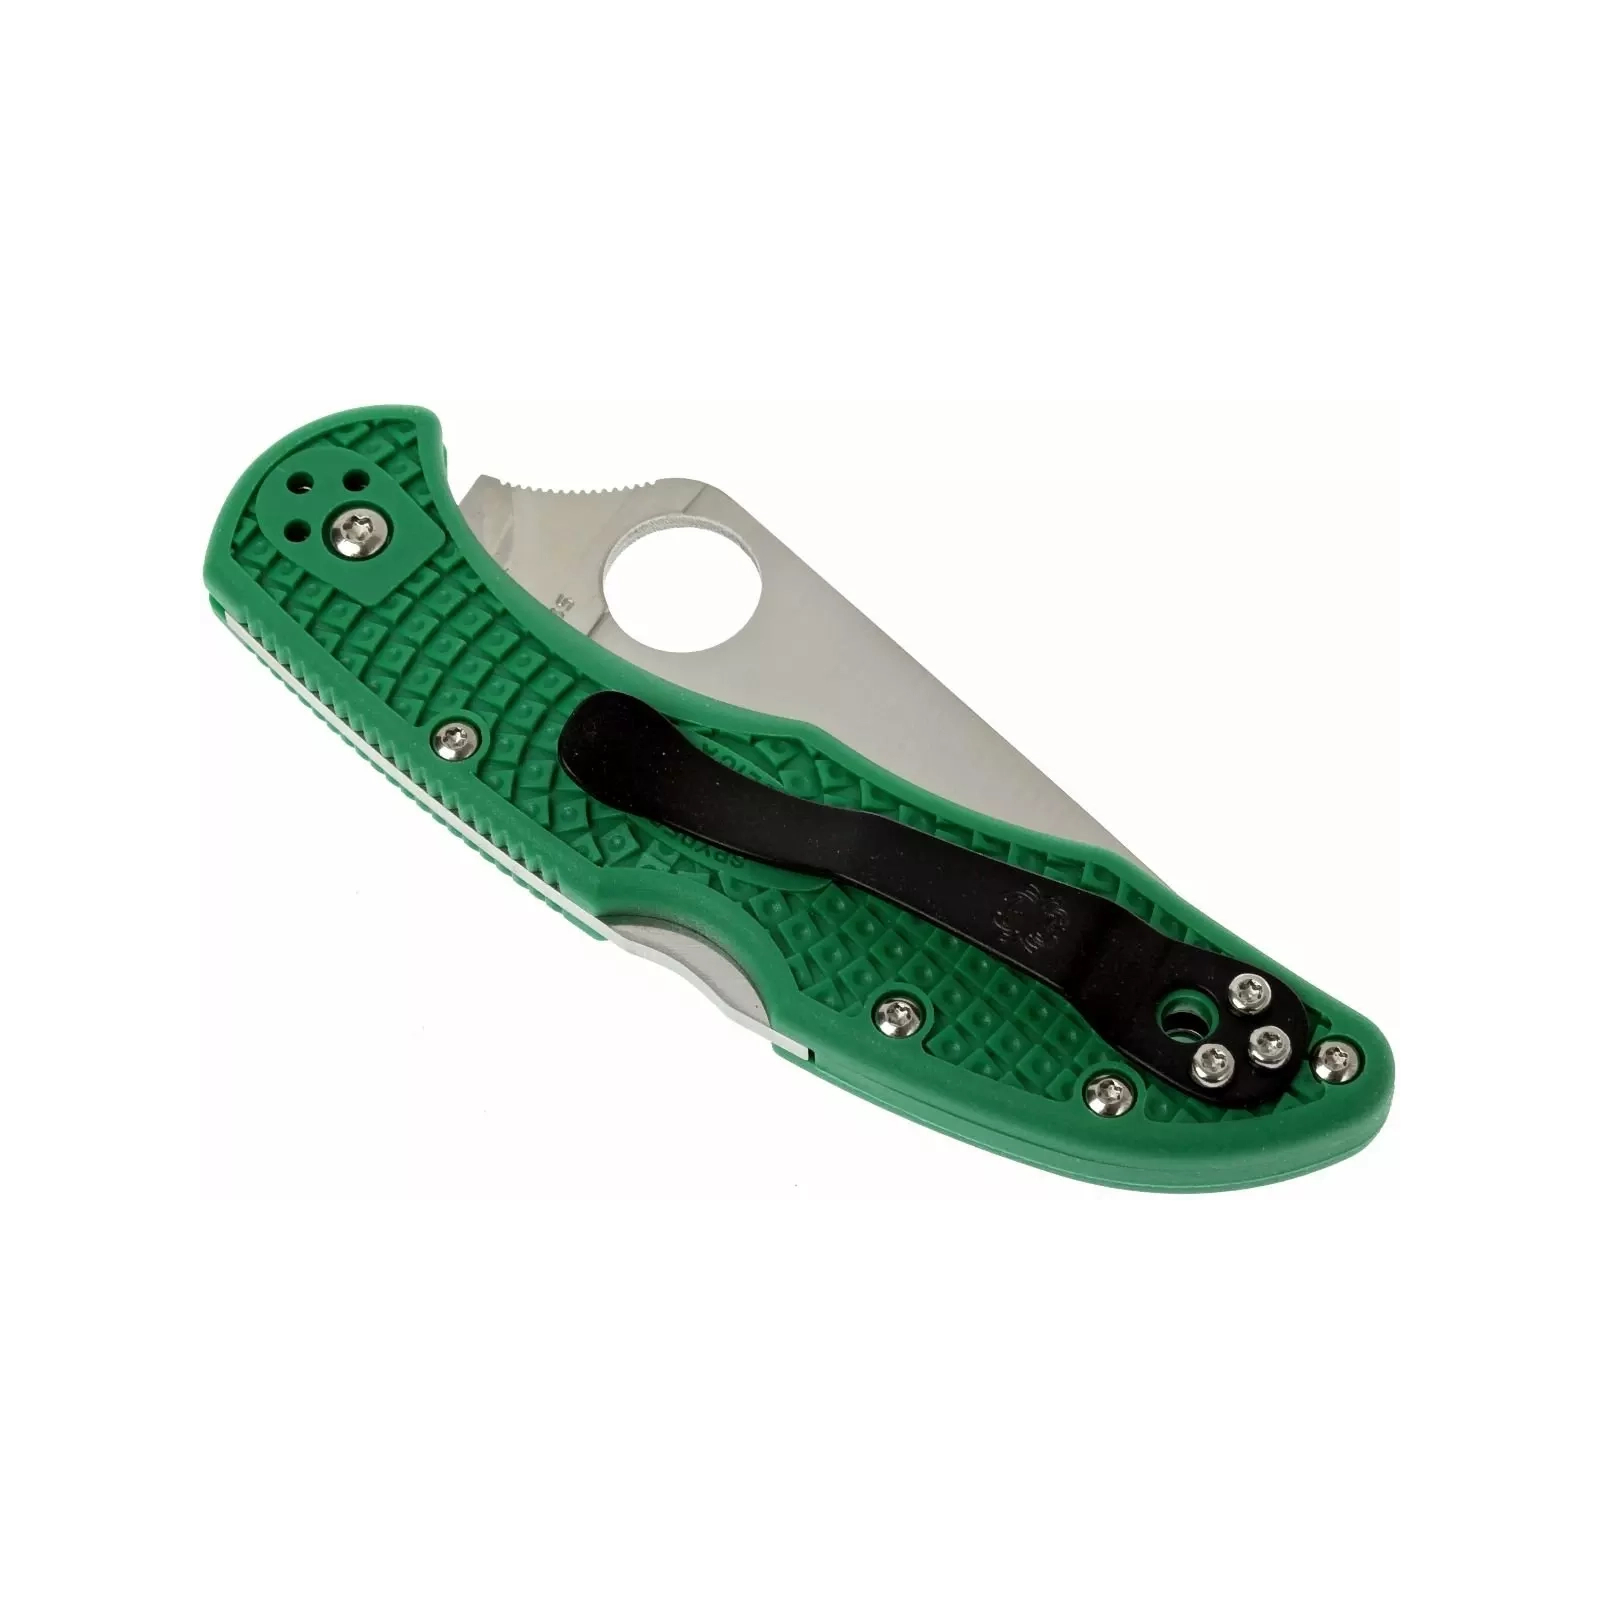 Нож Spyderco Delica 4 Flat Ground ACX 390 Green (C11FPGR) изображение 7